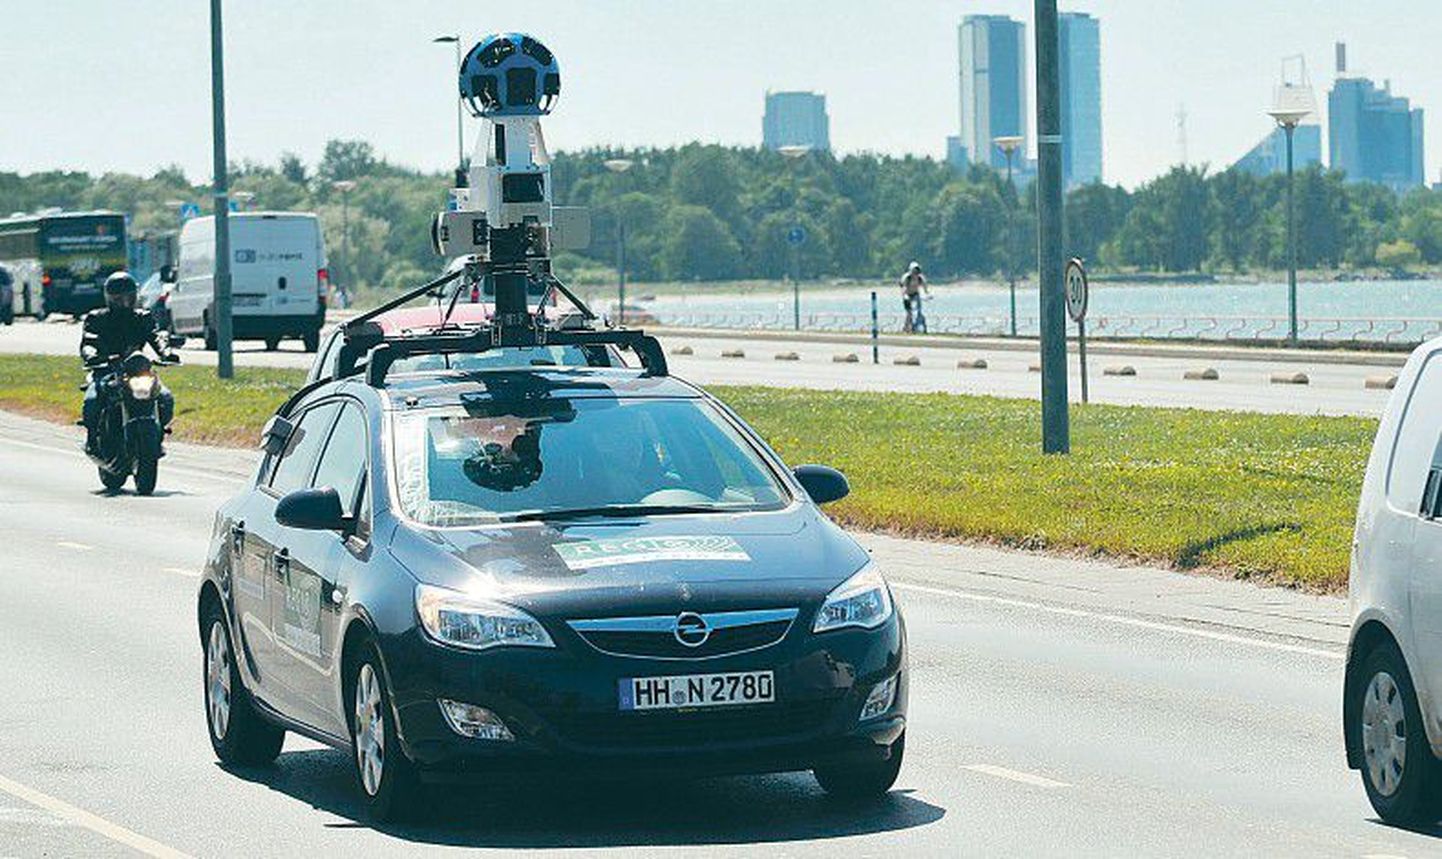 Автомобиль Google Street View фотографировал улицу Пирита в Таллинне в июне прошлого года.